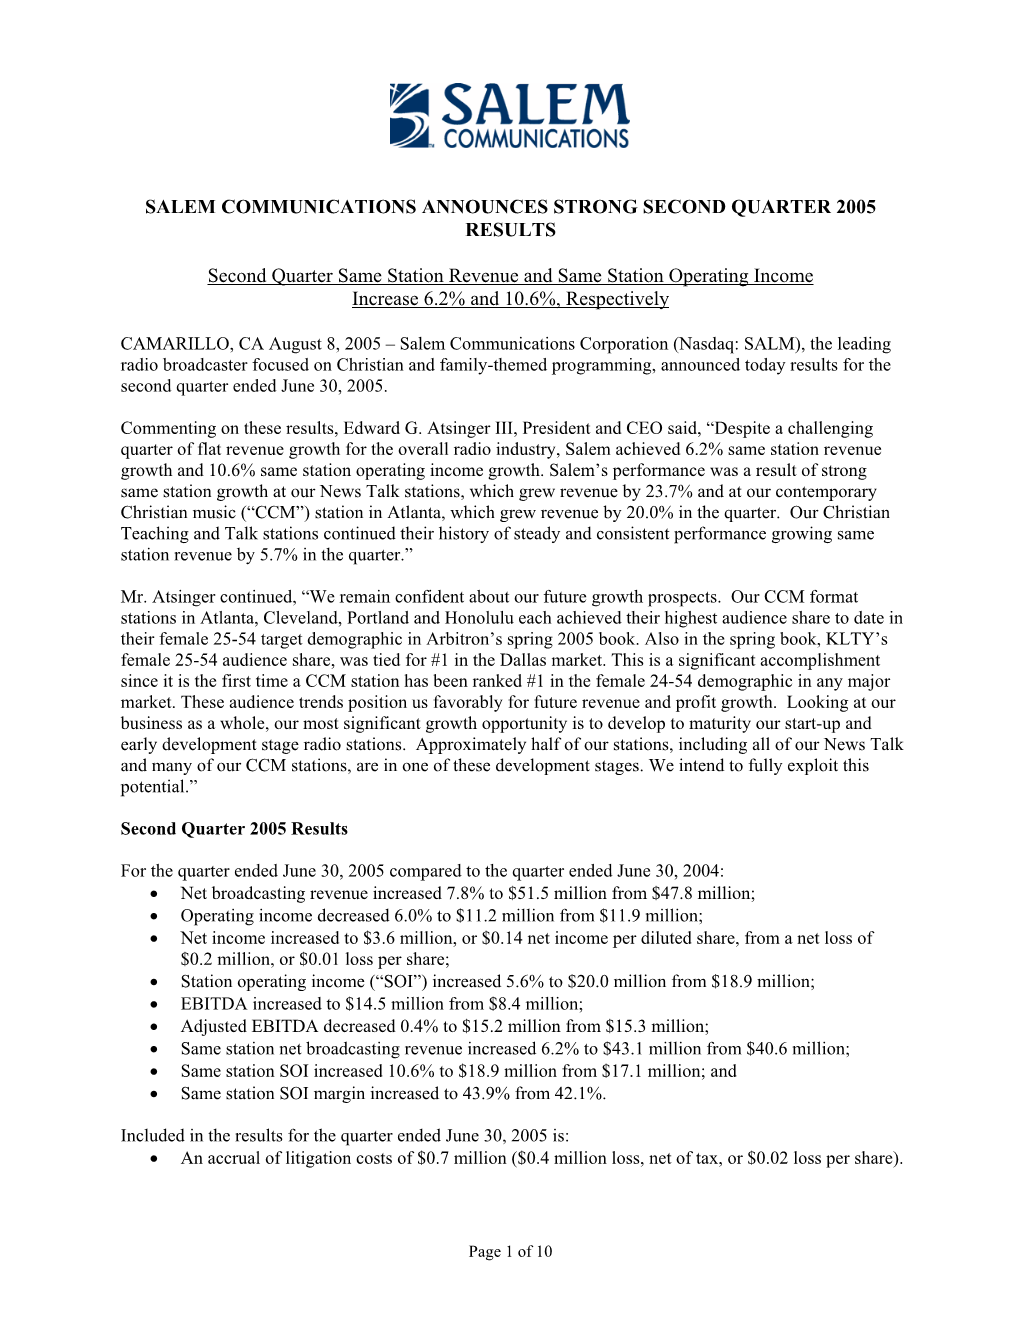 Salem Communications Announces Strong Second Quarter 2005 Results